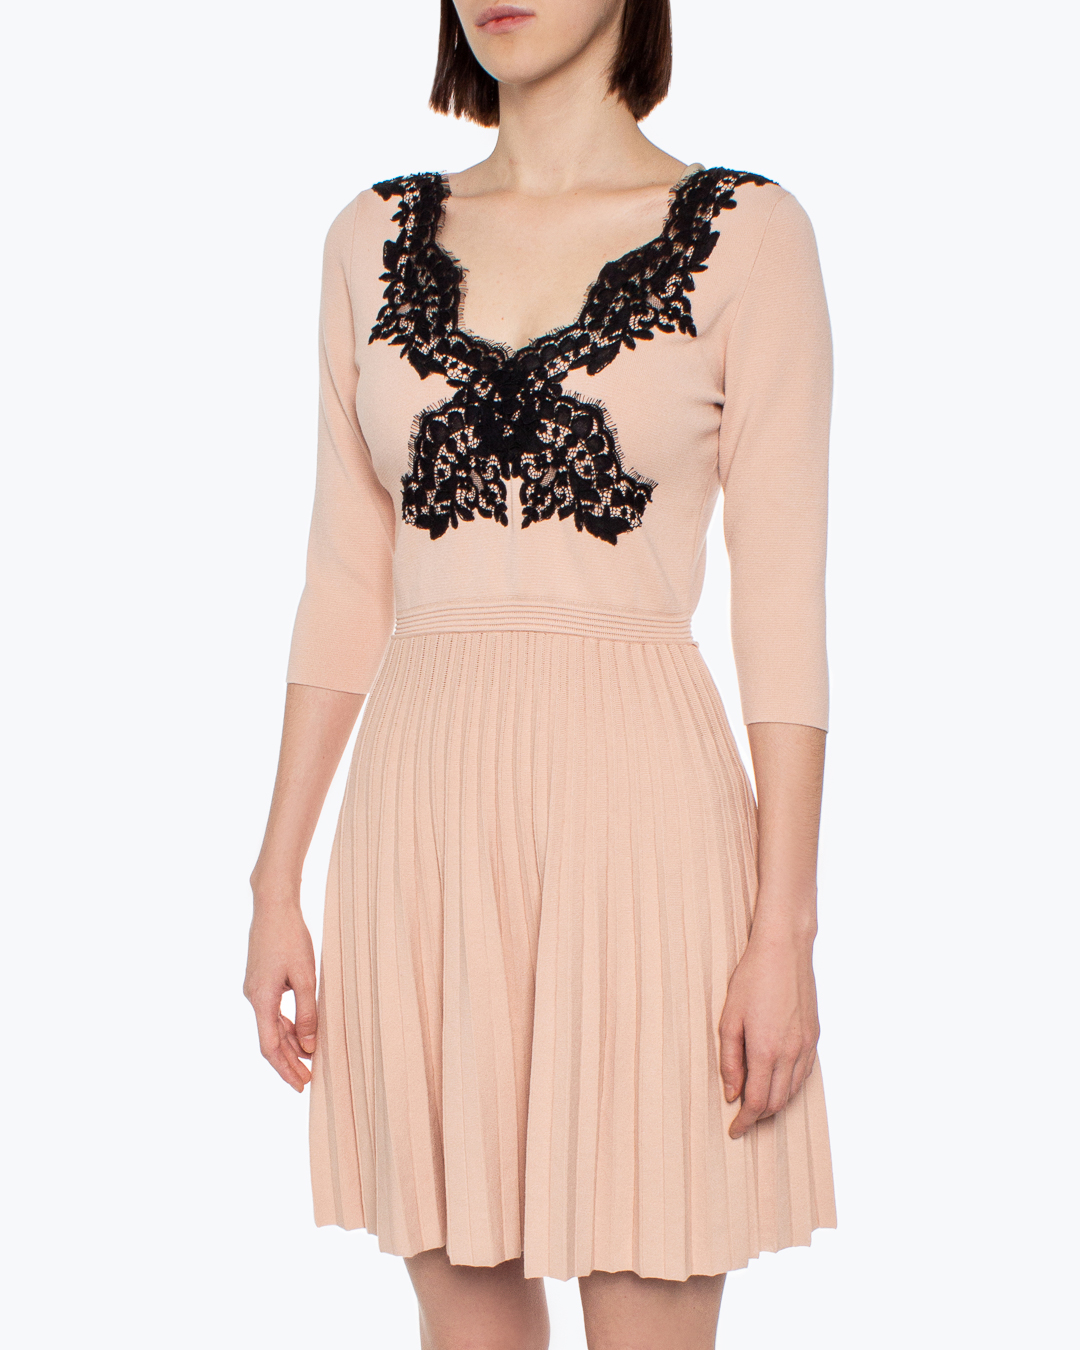 платье Anna Molinari 7A043A розовый+черный l, размер l, цвет розовый+черный 7A043A розовый+черный l - фото 3